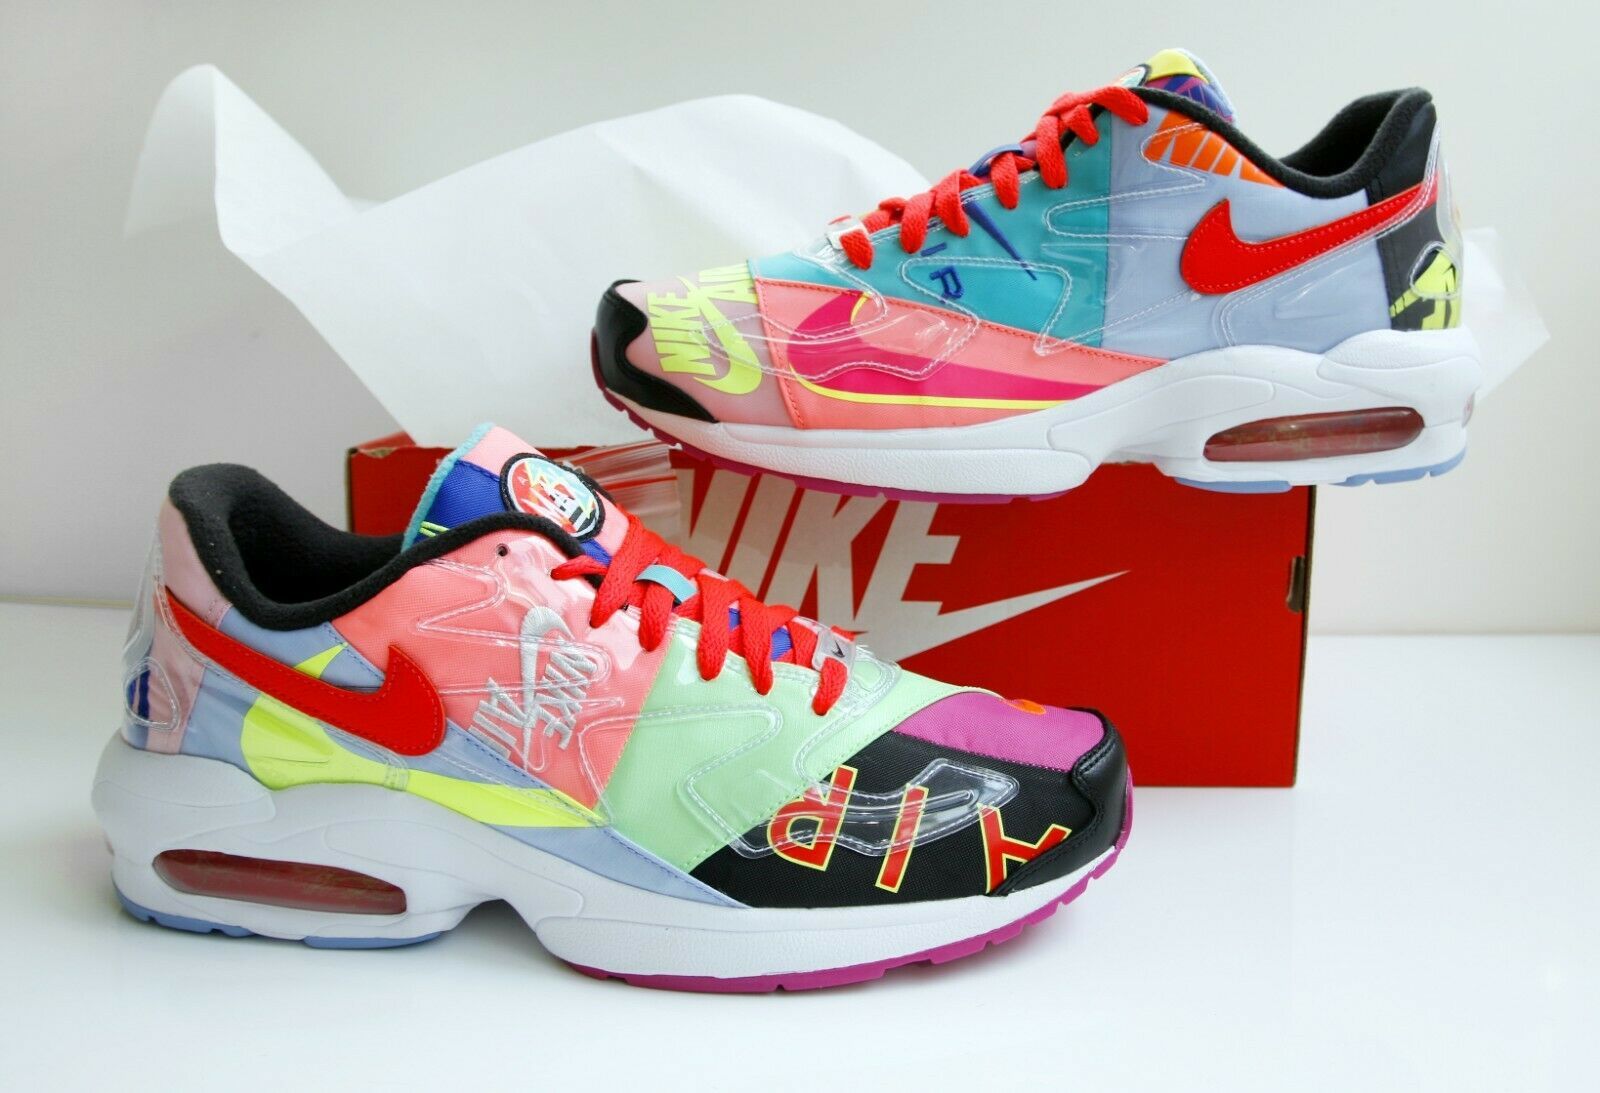 Nike Air Max 2 Light QS “Atmos” Multicolor -Men's Shoe Size:105. REG